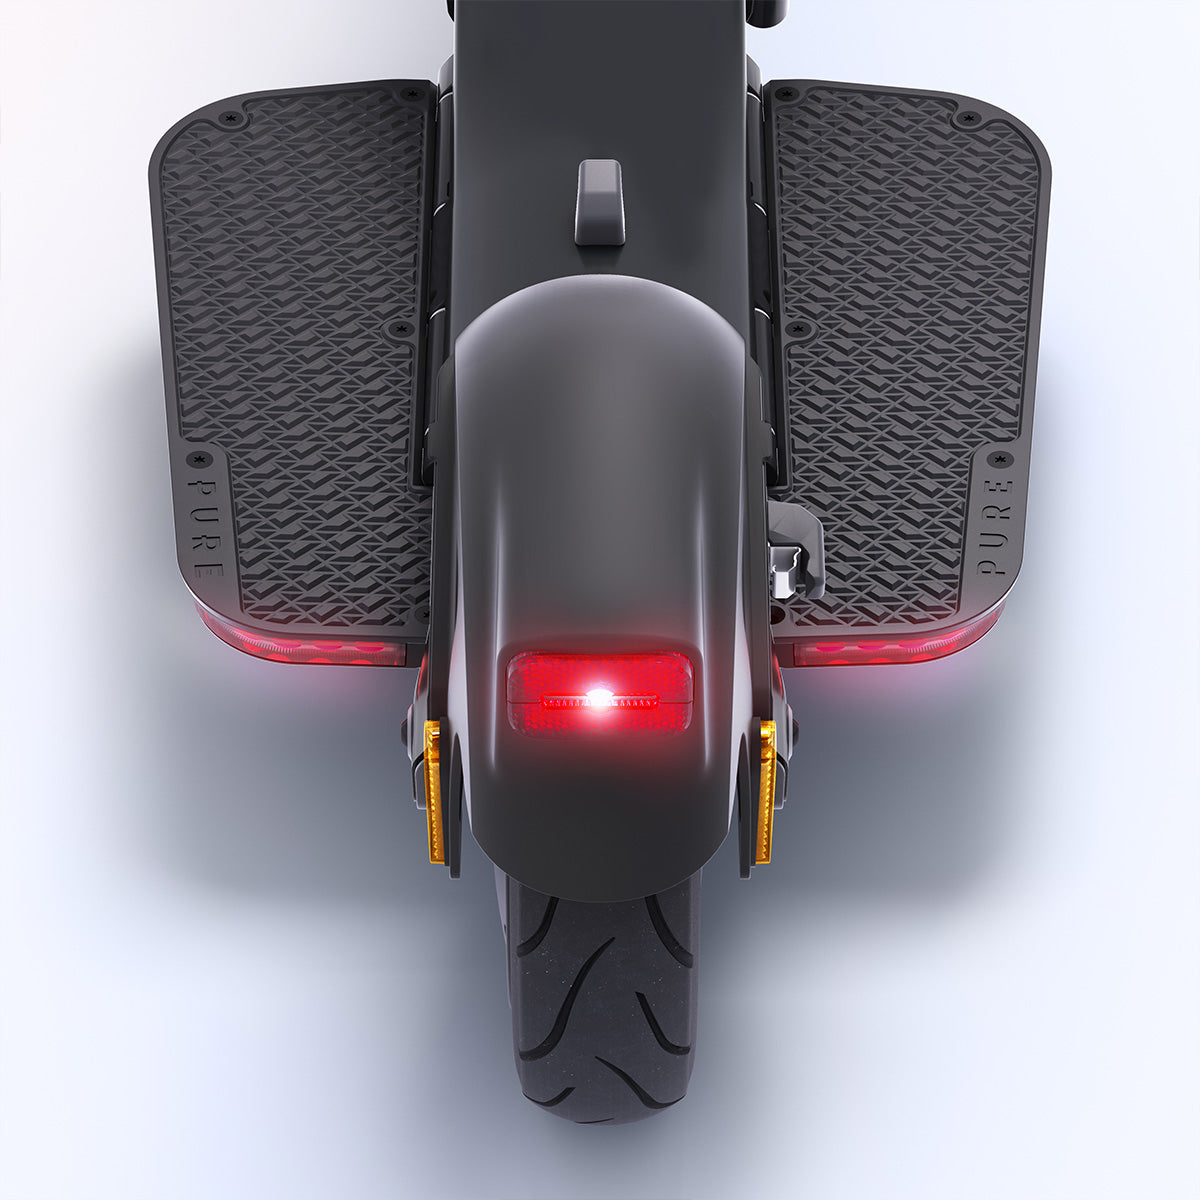 Pure Advance Flex Patinete Eléctrico - El e-scooter más compacto. Portátil. Versátil. Alcance de 40 km.